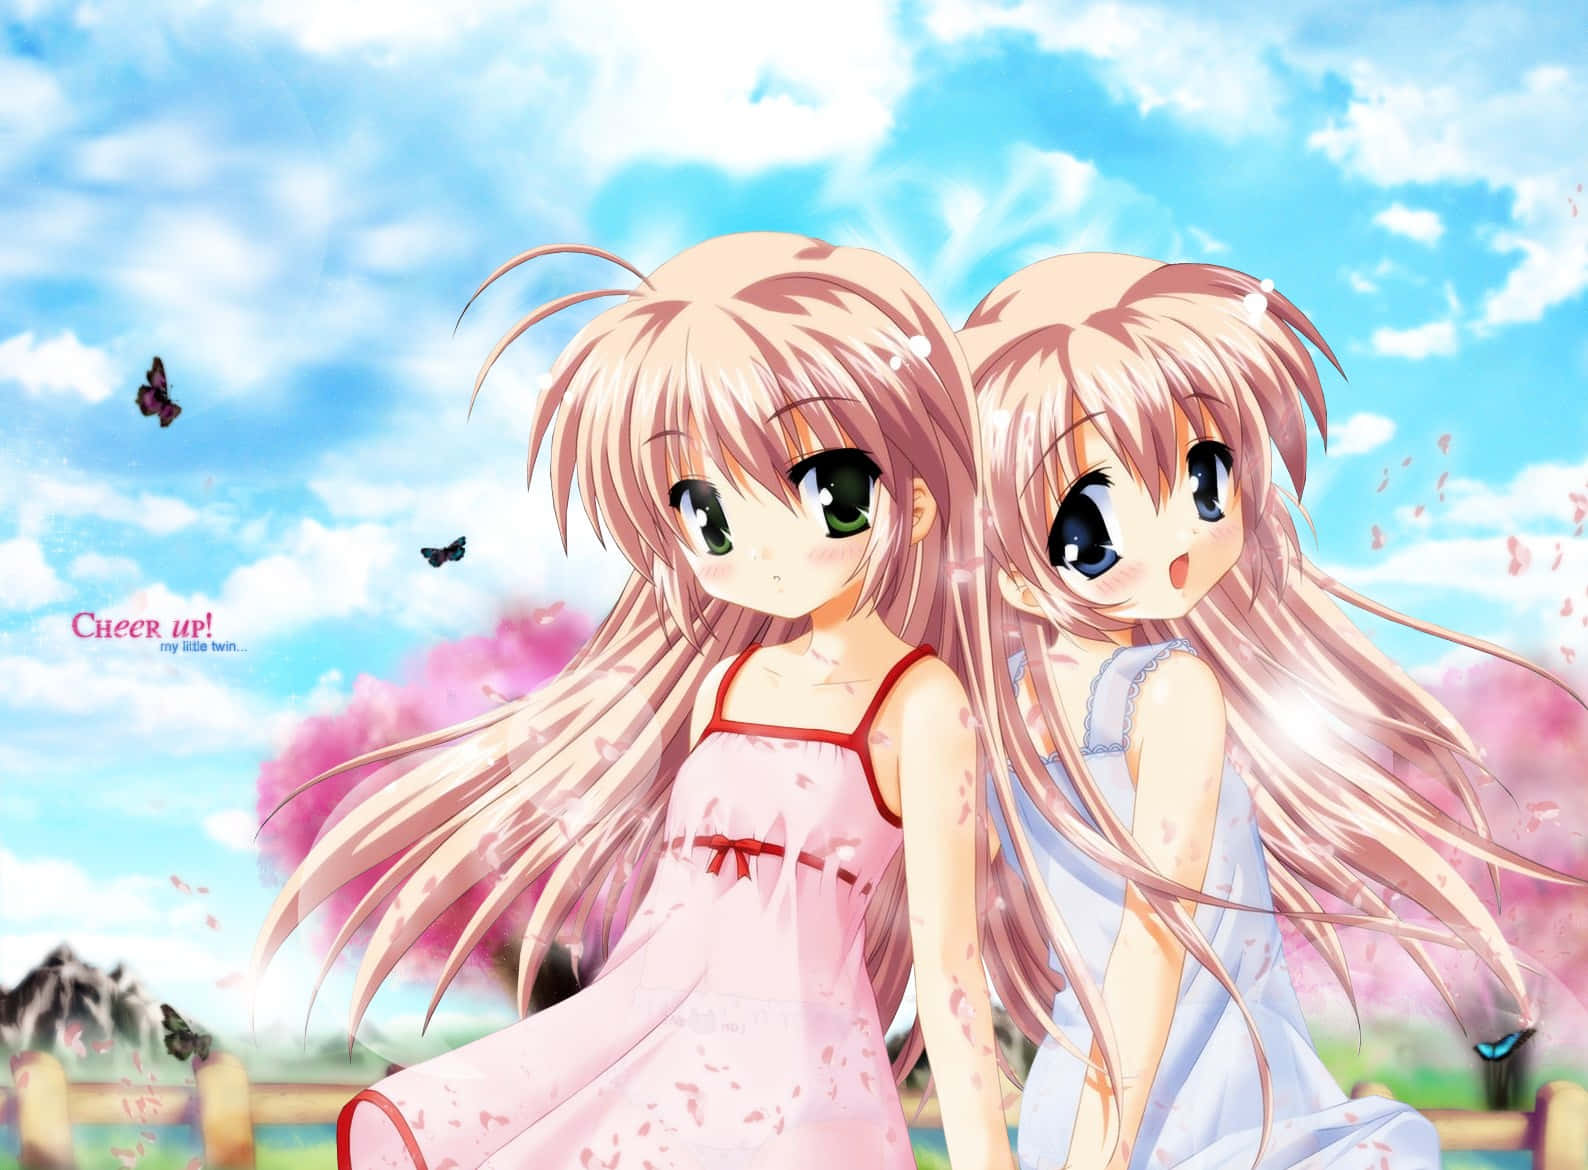 Download Dazzling Anime Digital Artwork Of Cute Sisters Wallpaper